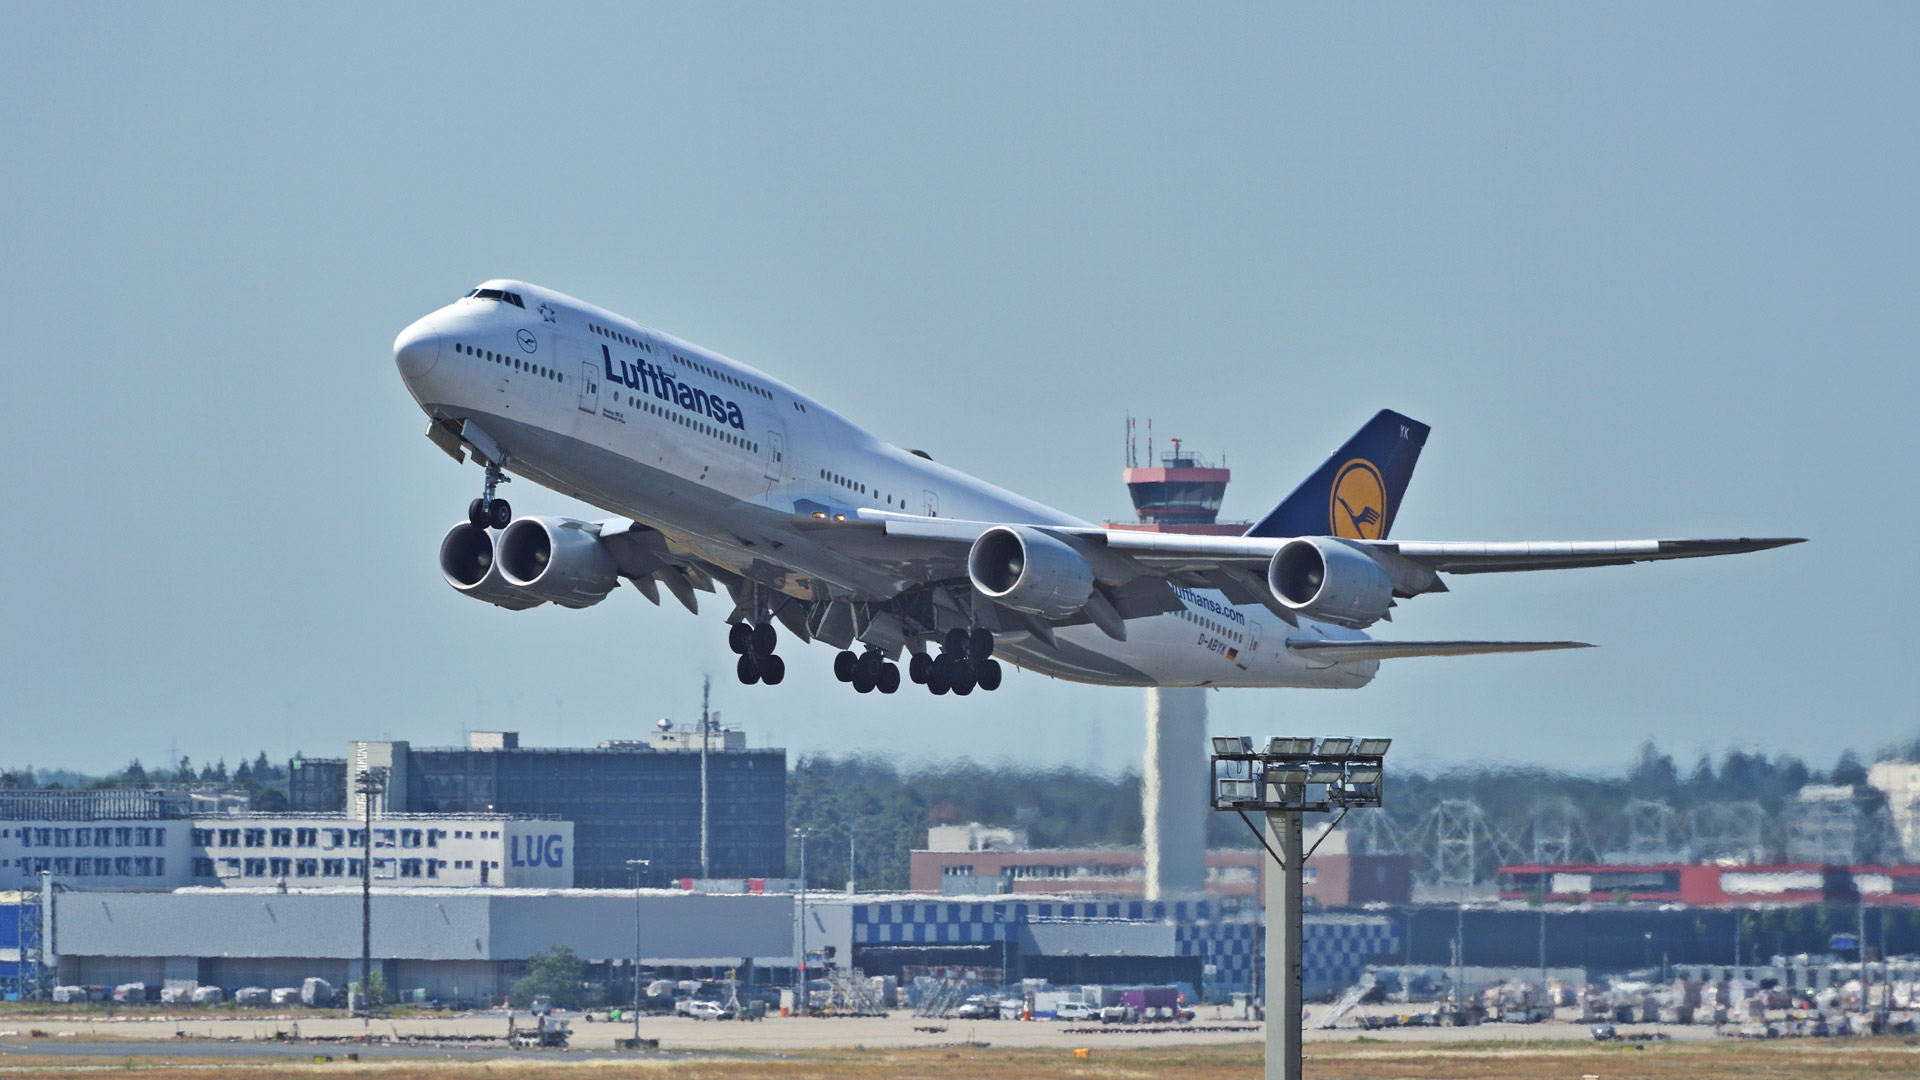 Startende Lufthansa Boeing 747 am Frankfurter Flughafen Fraport. | picture alliance / Daniel Kubirs